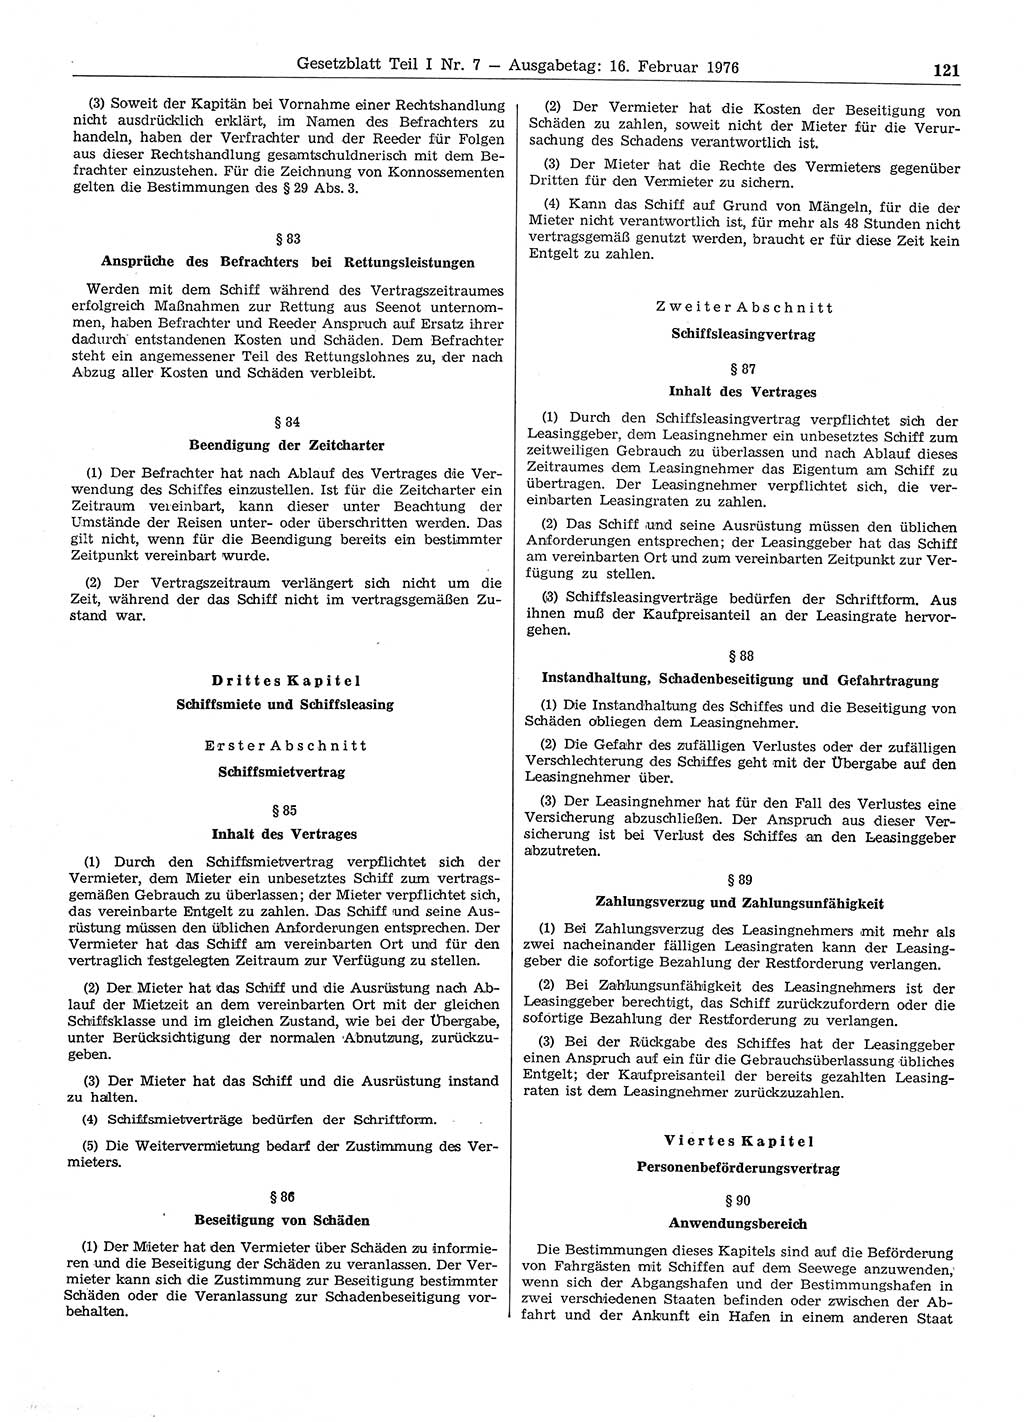 Gesetzblatt (GBl.) der Deutschen Demokratischen Republik (DDR) Teil Ⅰ 1976, Seite 121 (GBl. DDR Ⅰ 1976, S. 121)